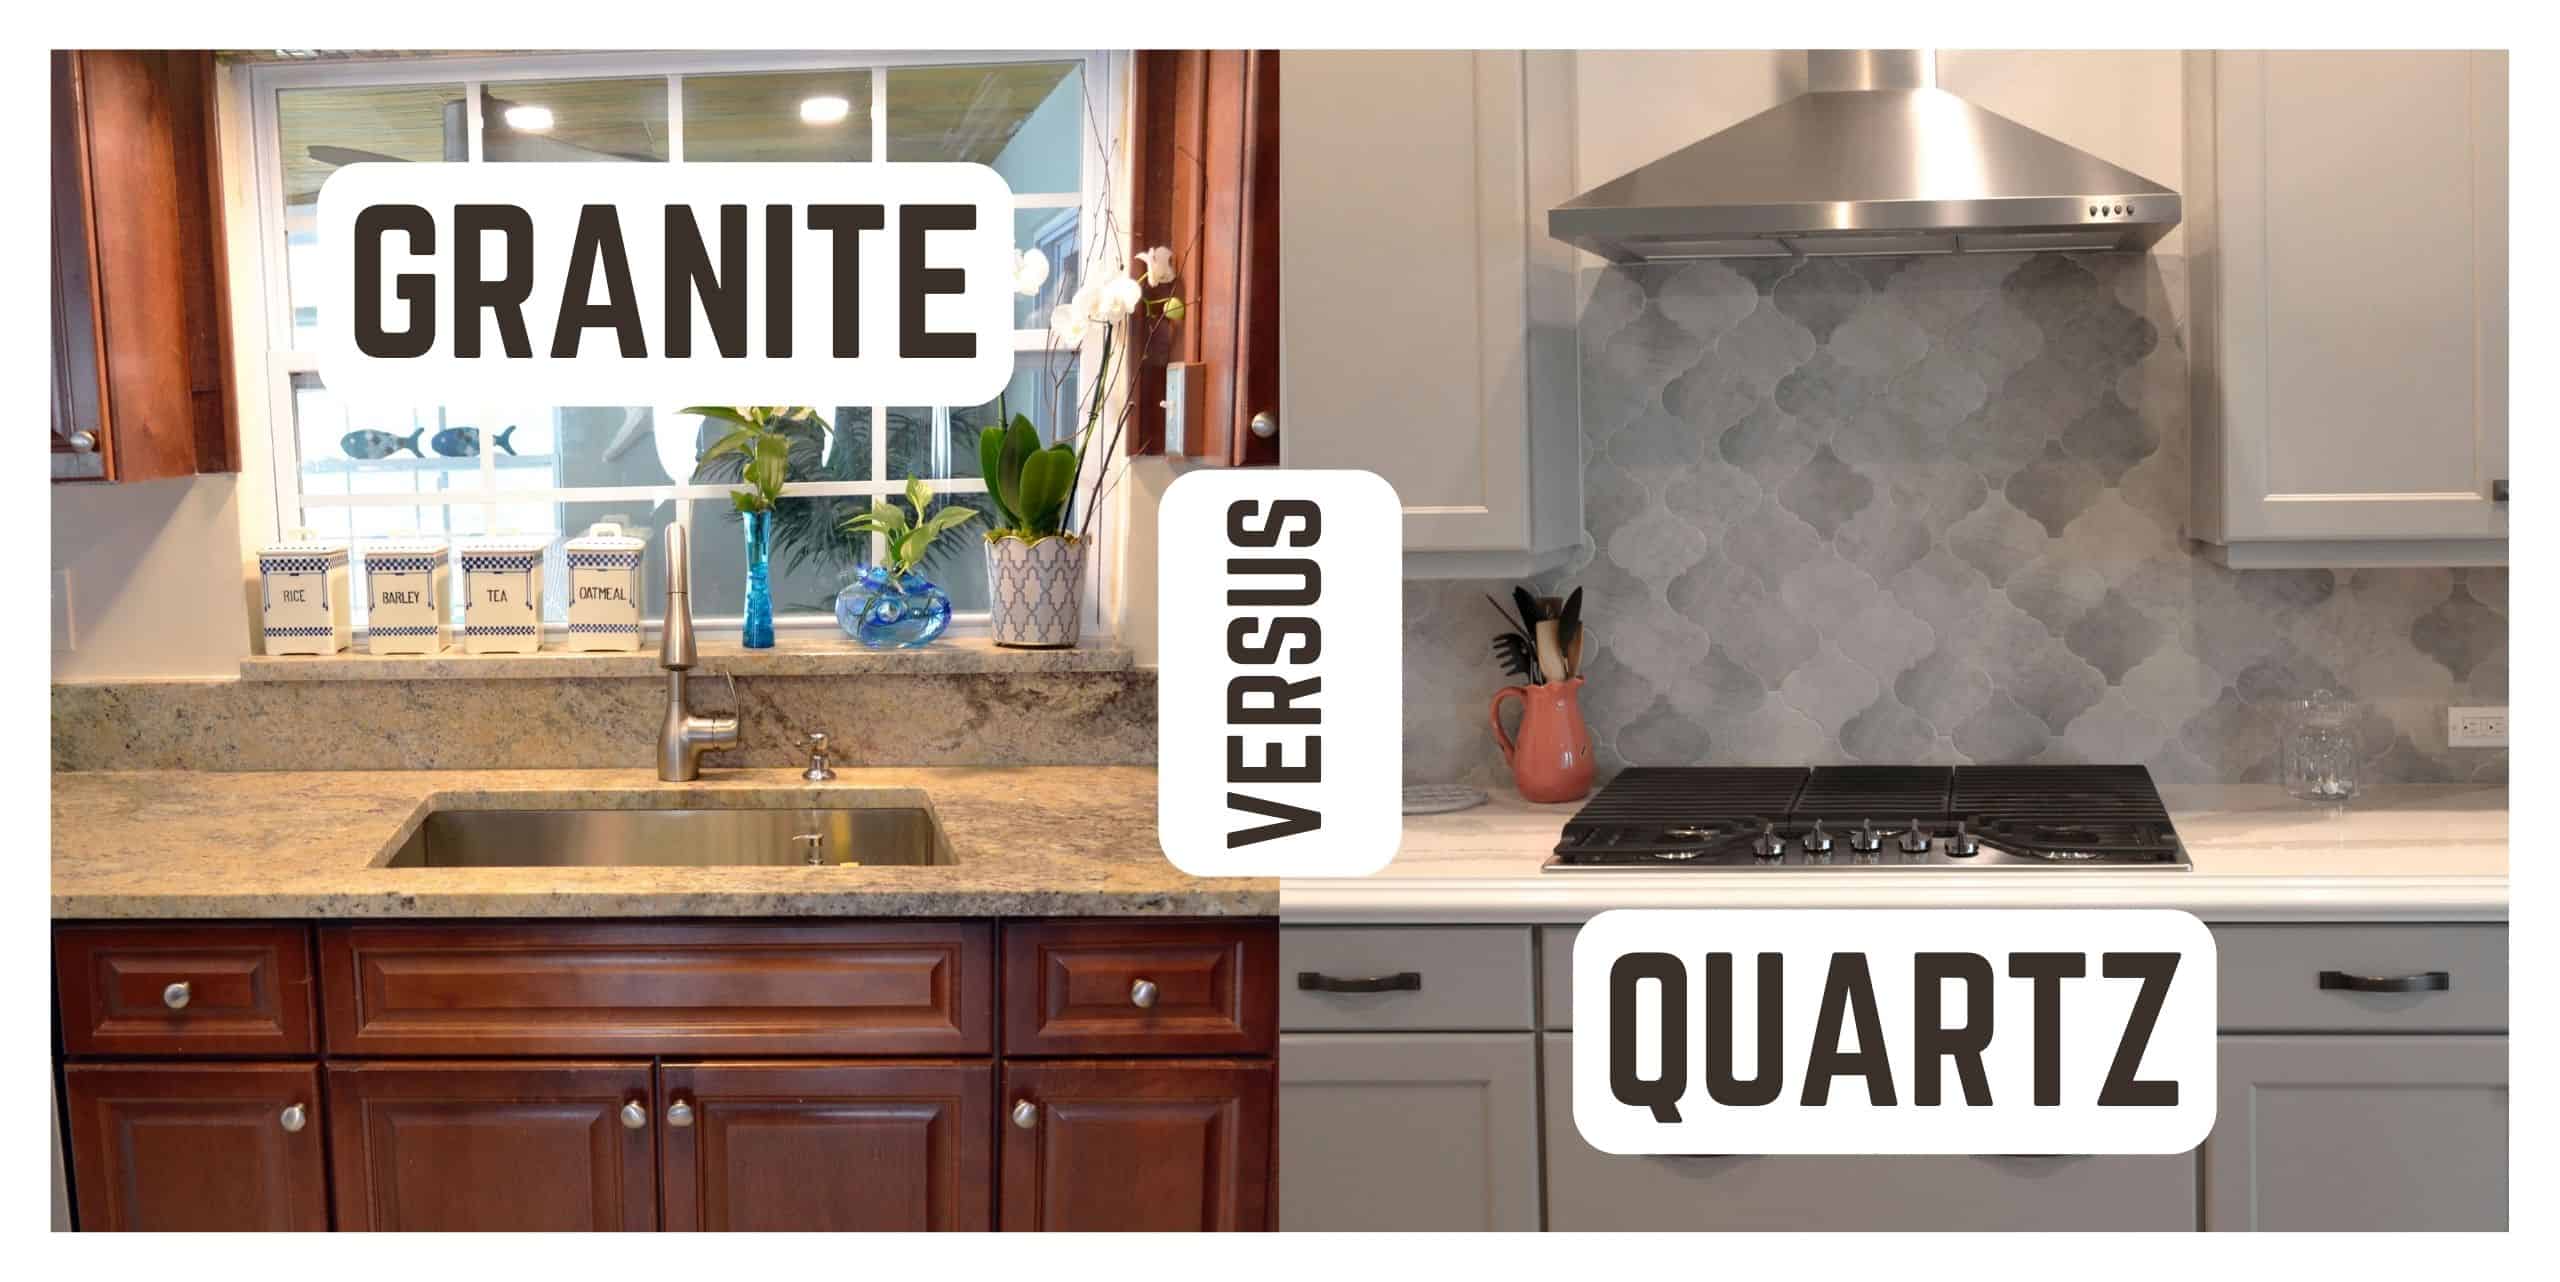 Grantie vs Quartz Granite versus Quartz Countertops